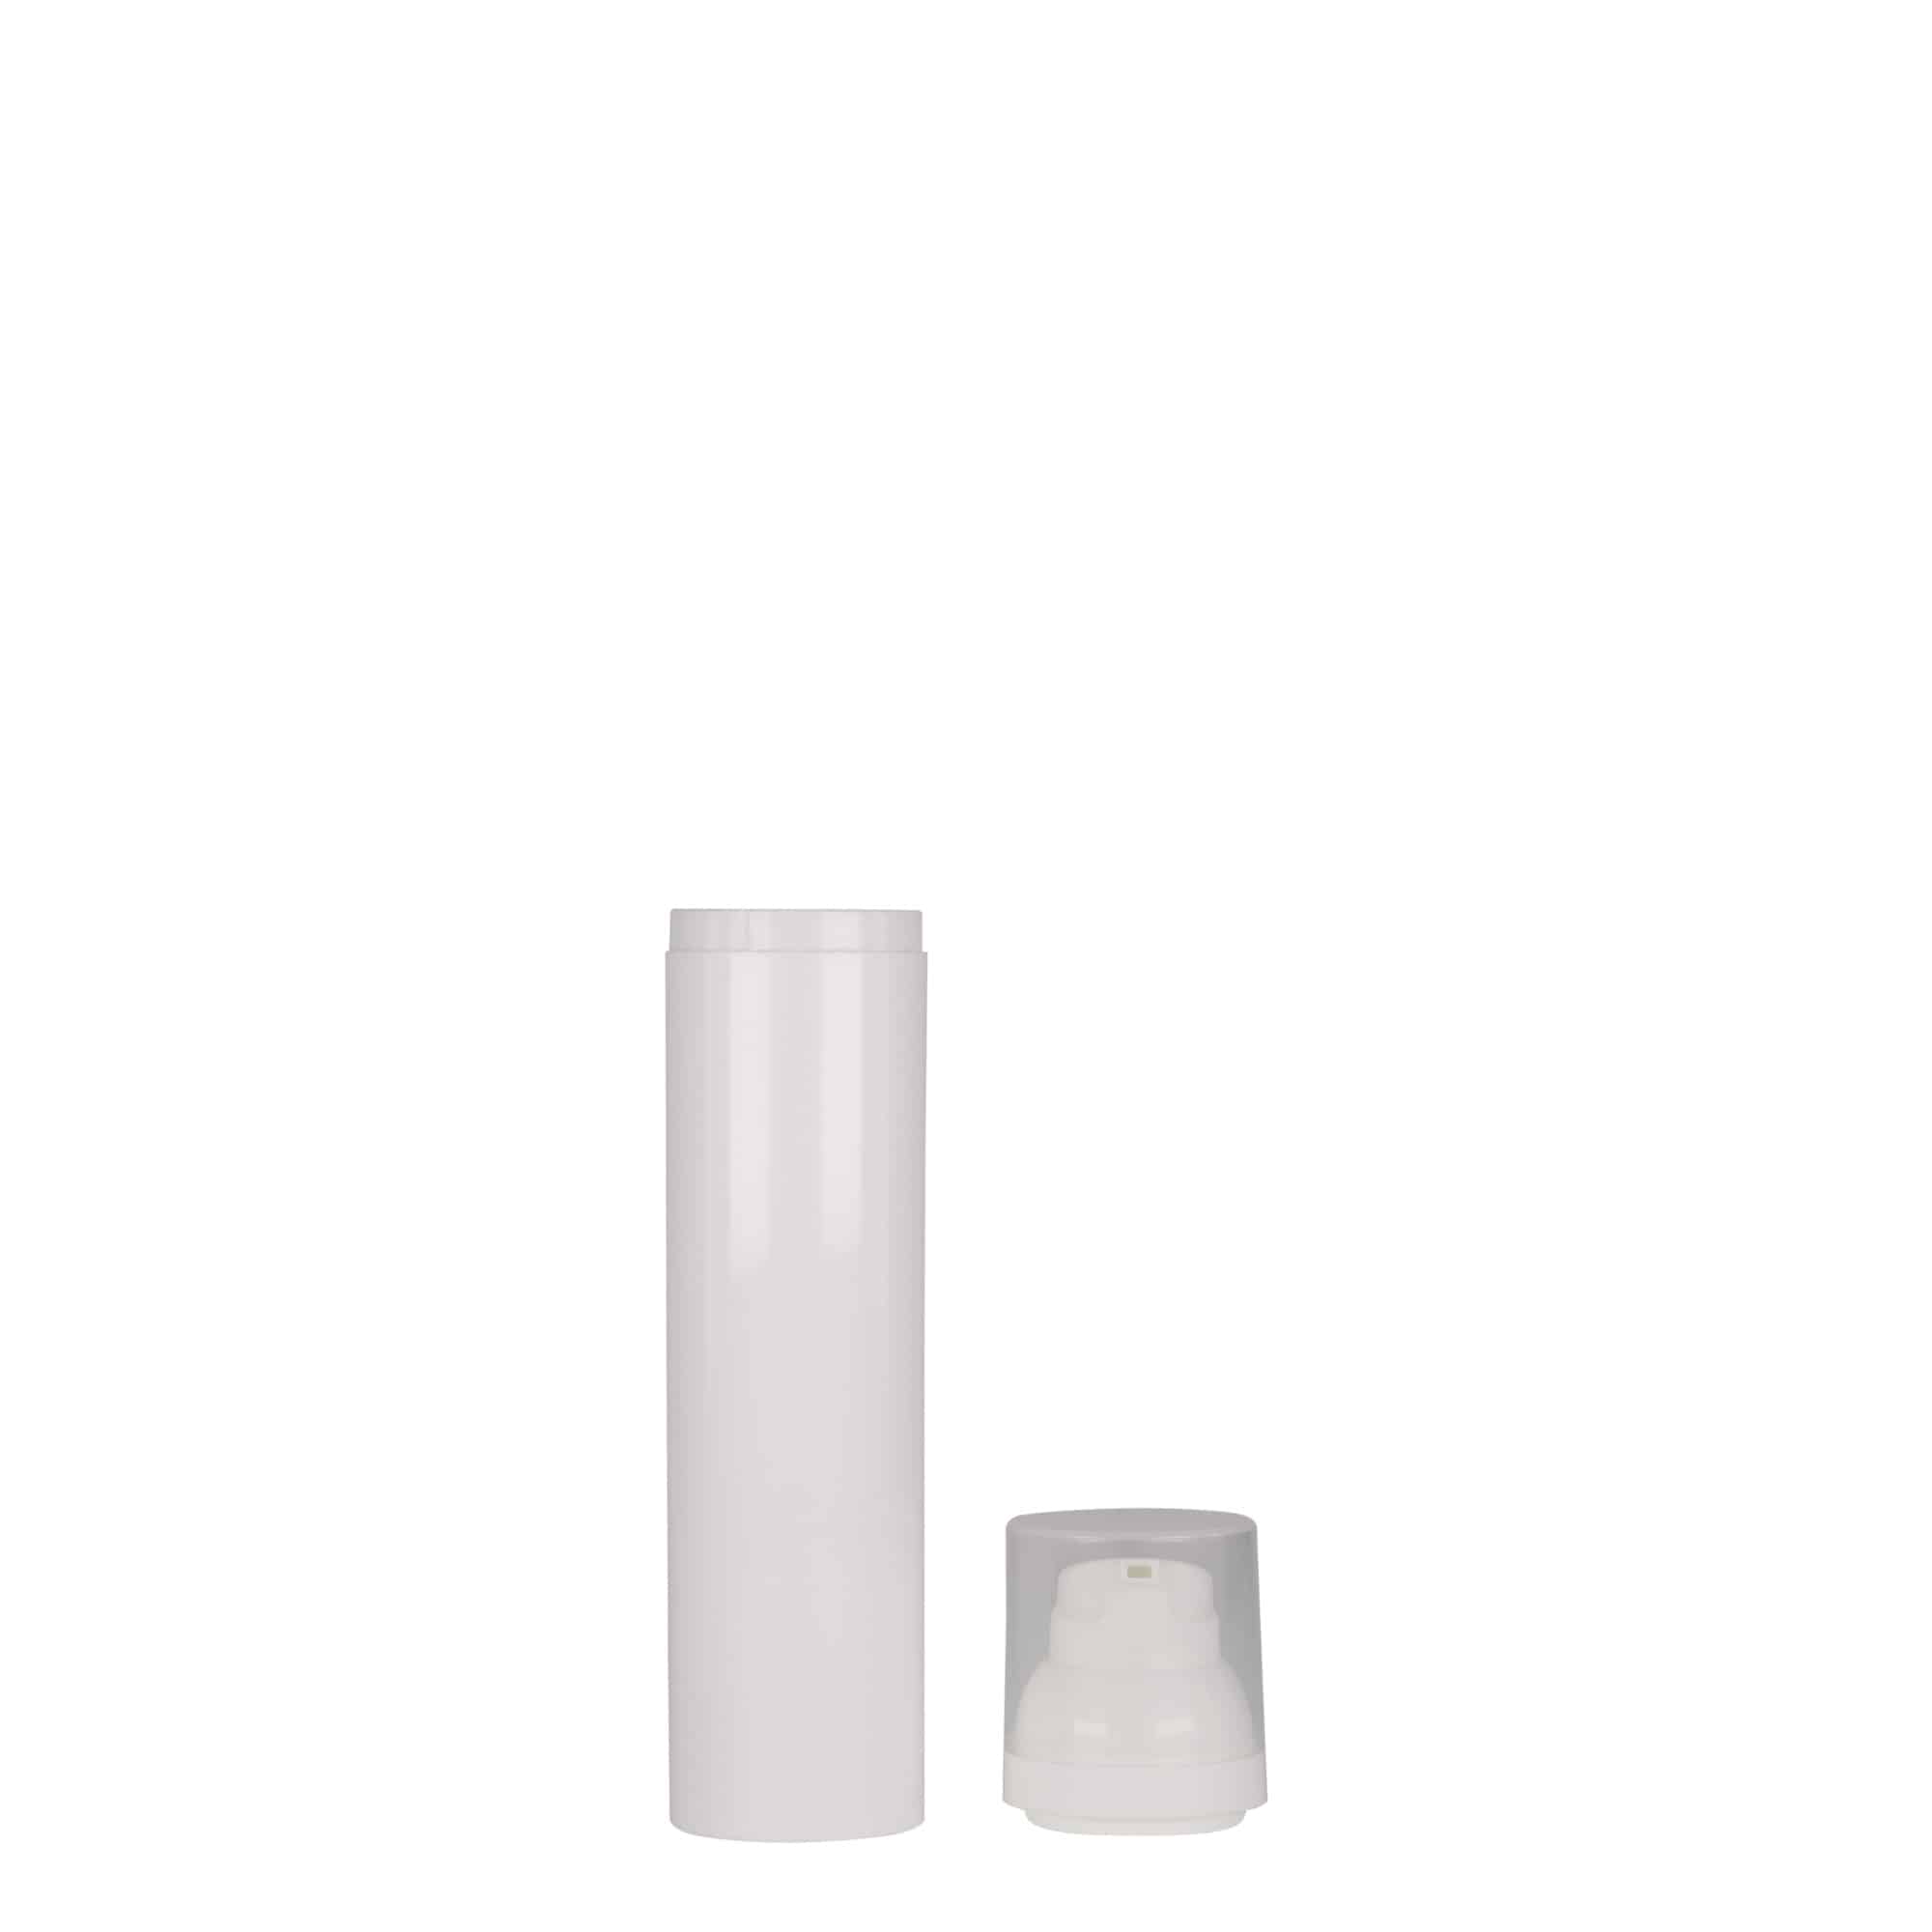 Bezvzduchový dávkovač 100 ml 'Mezzo', plast PP, bílý